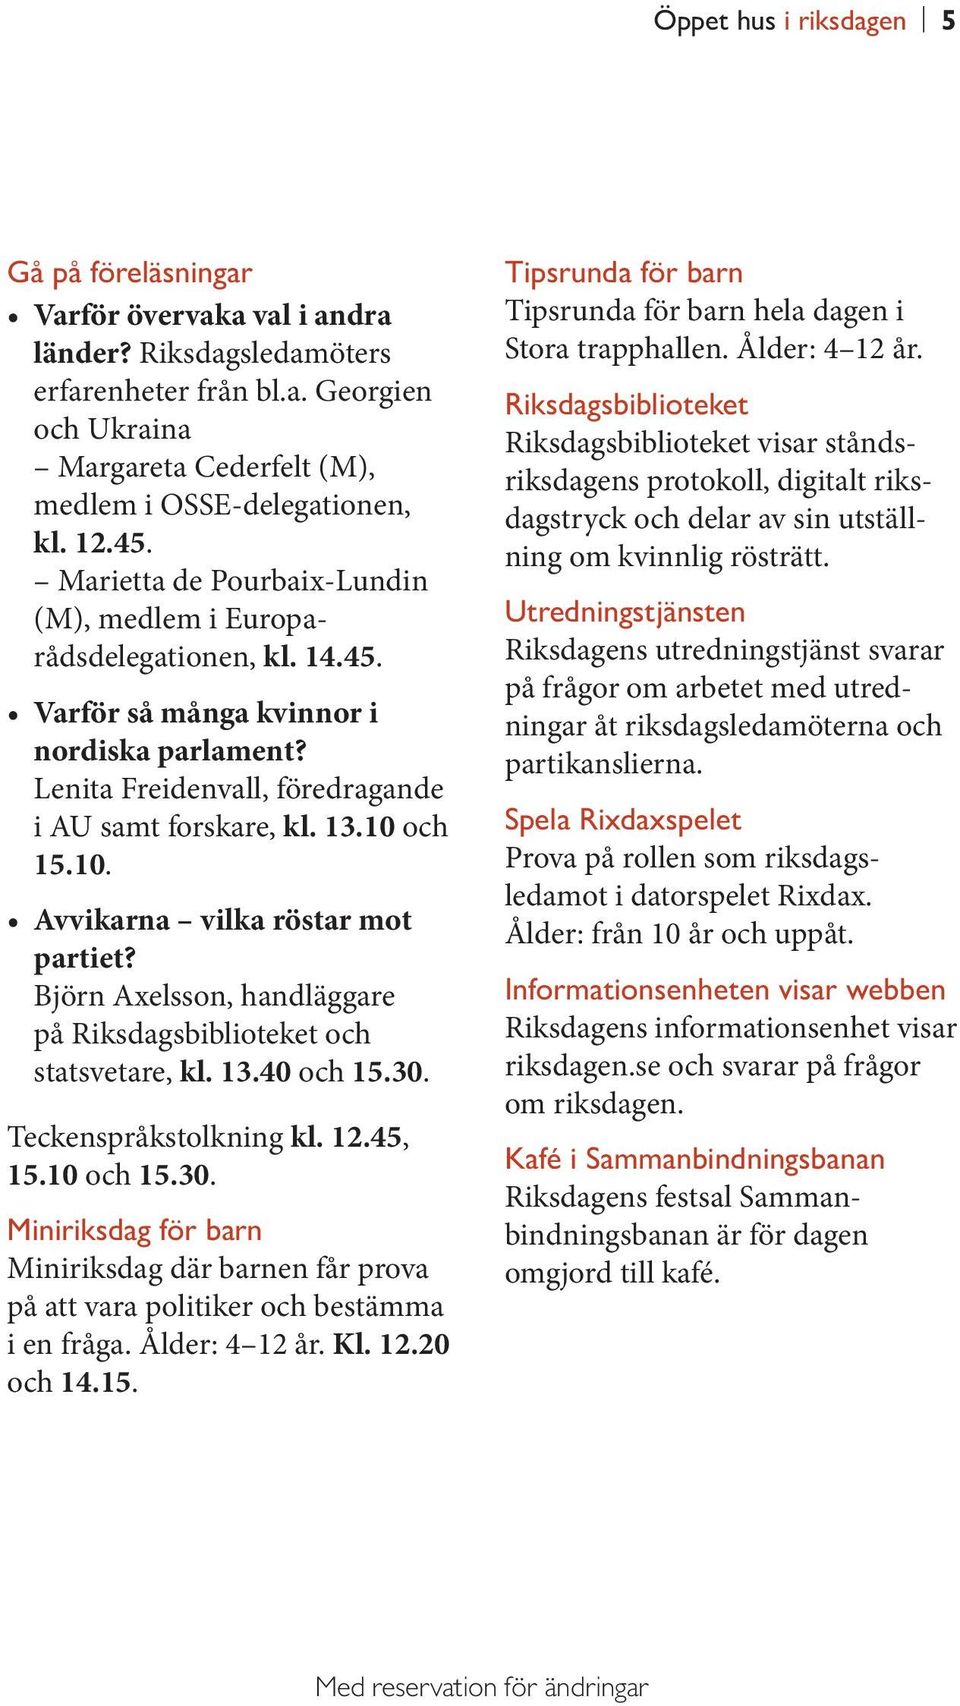 10. Avvikarna vilka röstar mot partiet? Björn Axelsson, handläggare på Riksdagsbiblioteket och statsvetare, kl. 13.40 och 15.30.